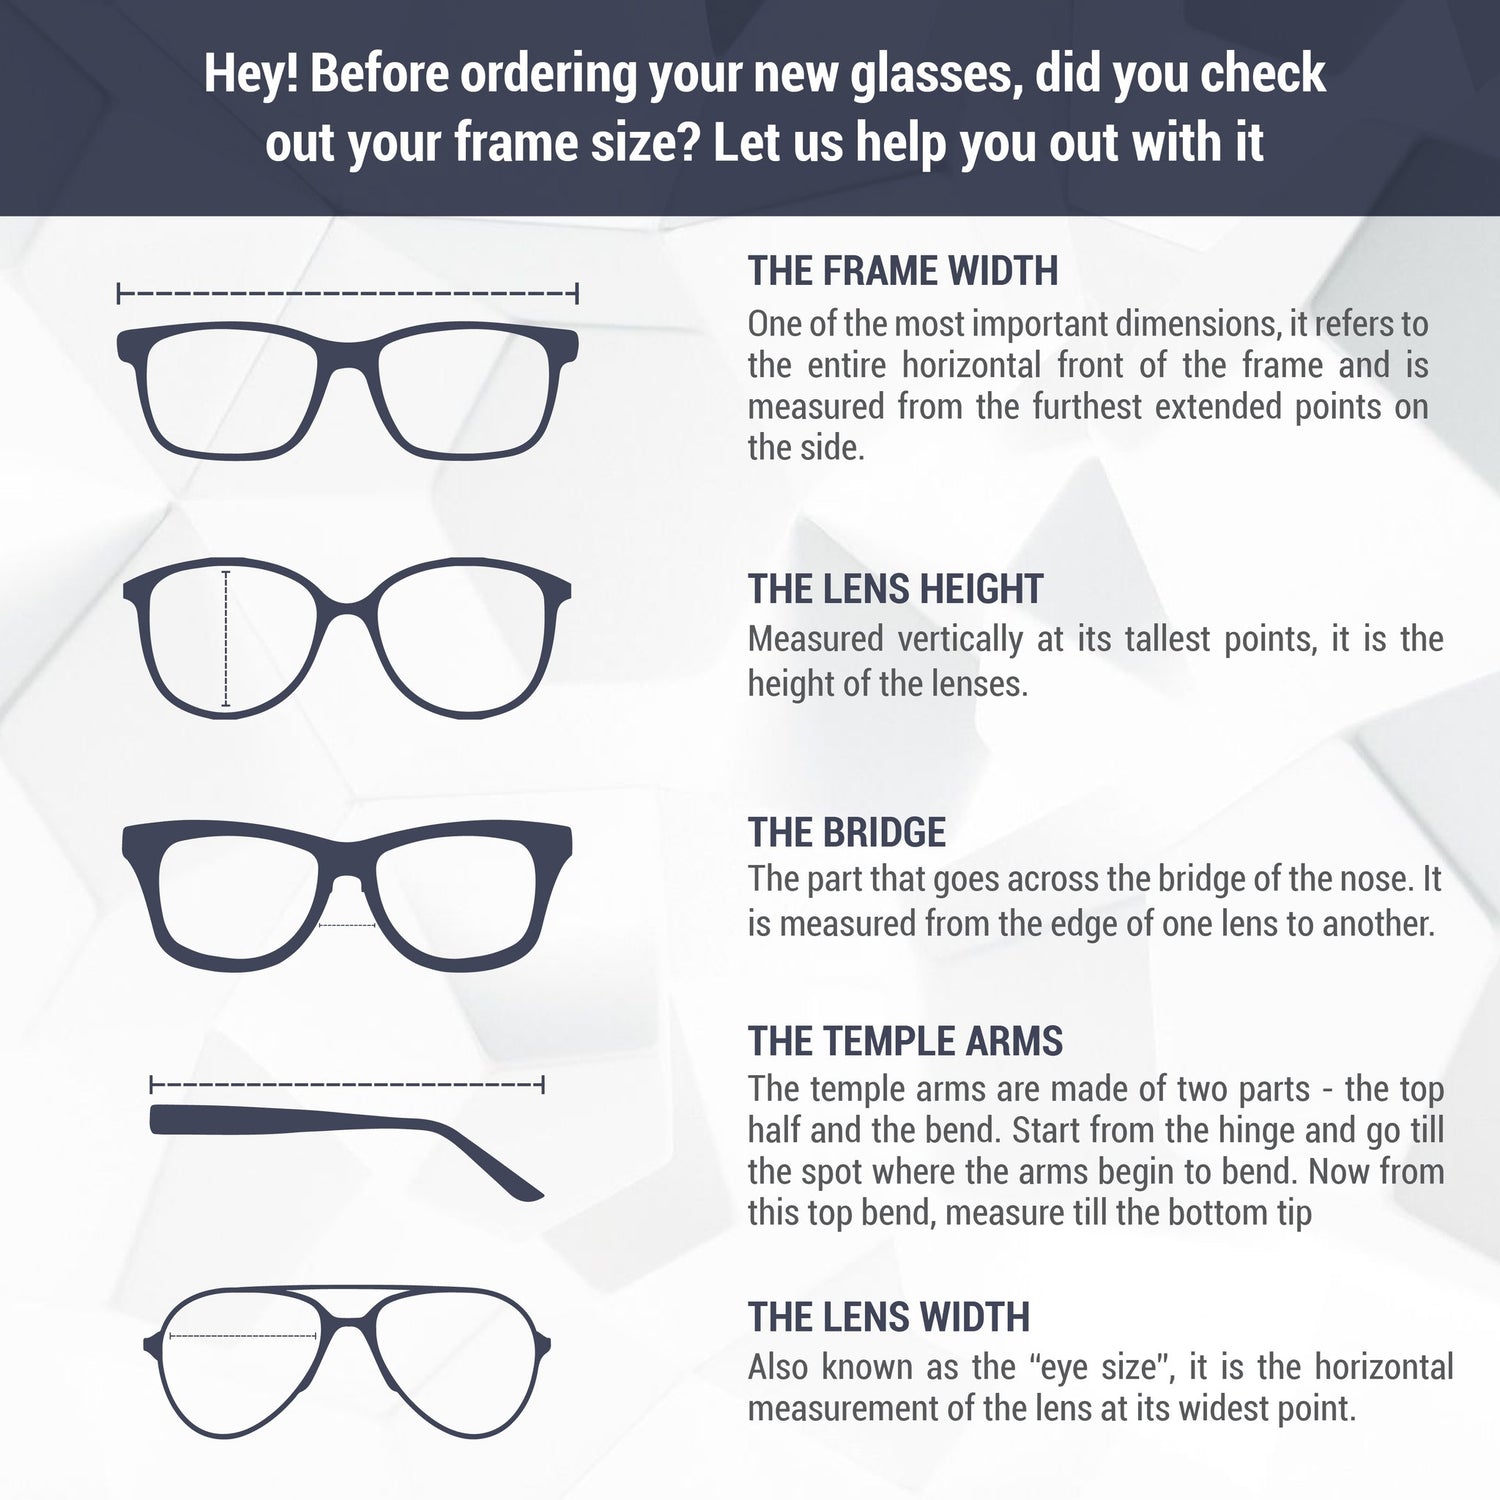 Monture de lunettes Marc Jacobs | Modèle MARC 417